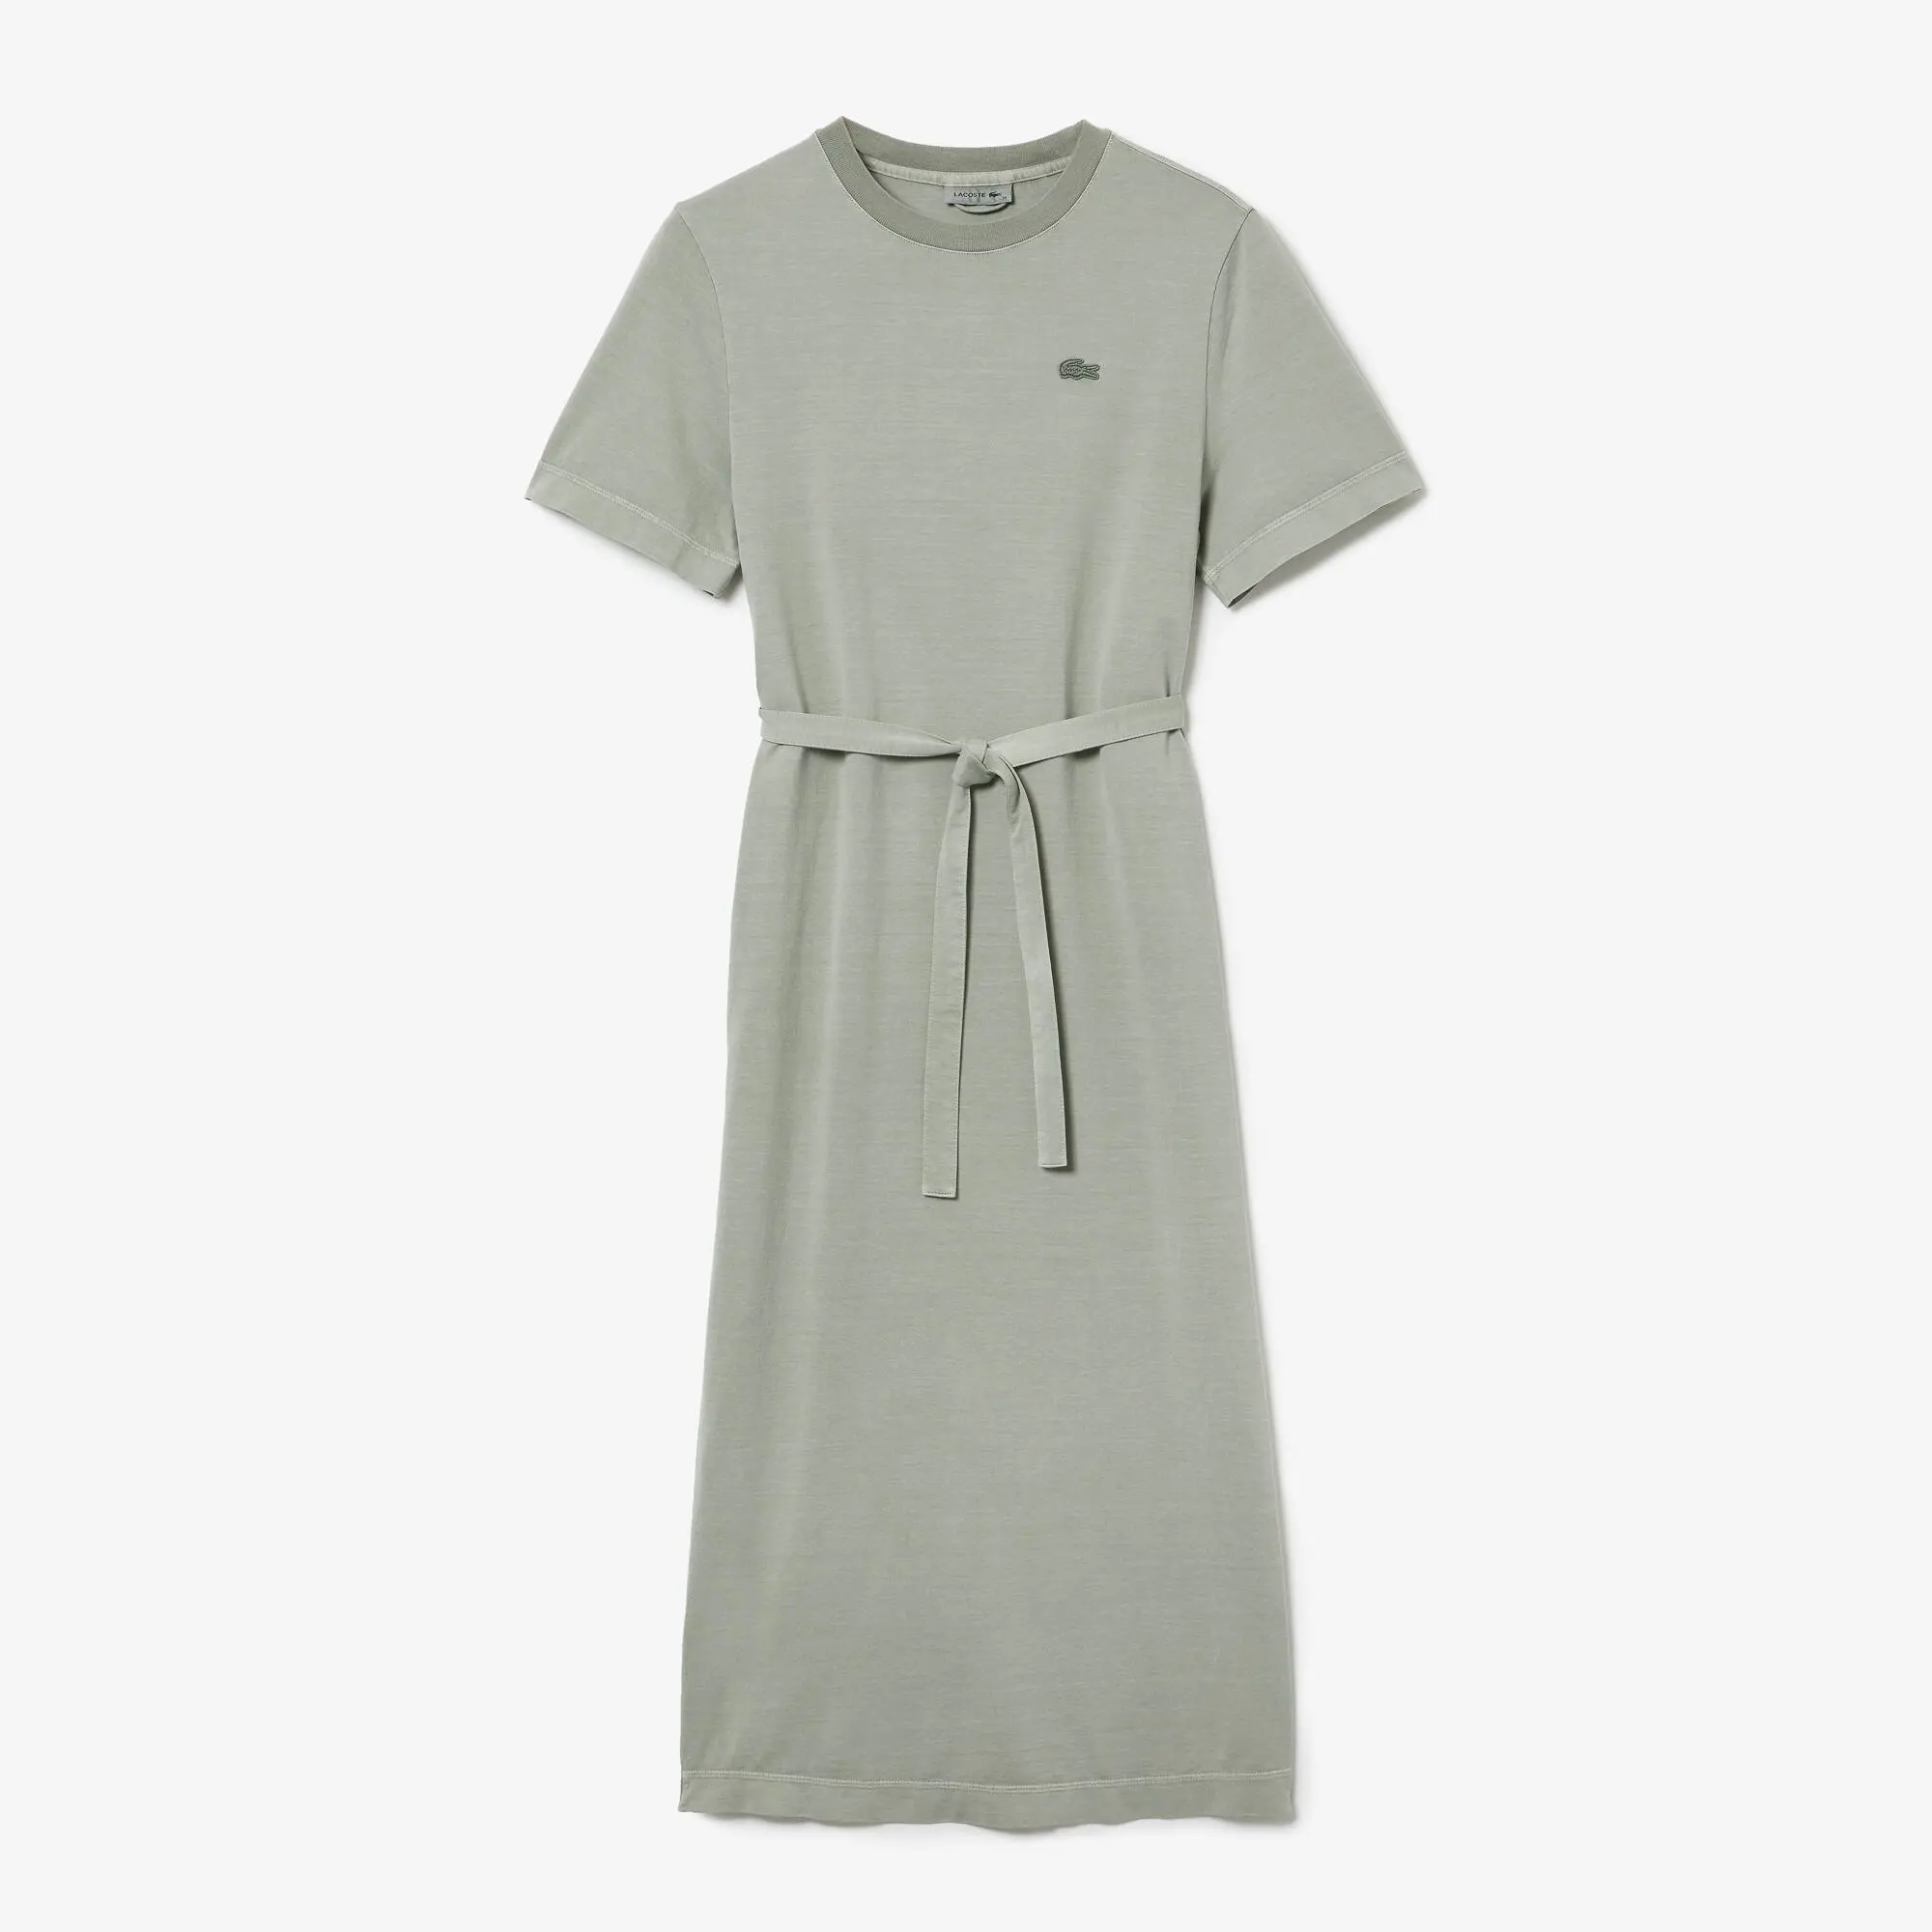 Lacoste Women’s Organic Cotton Long T-Shirt Dress. 2